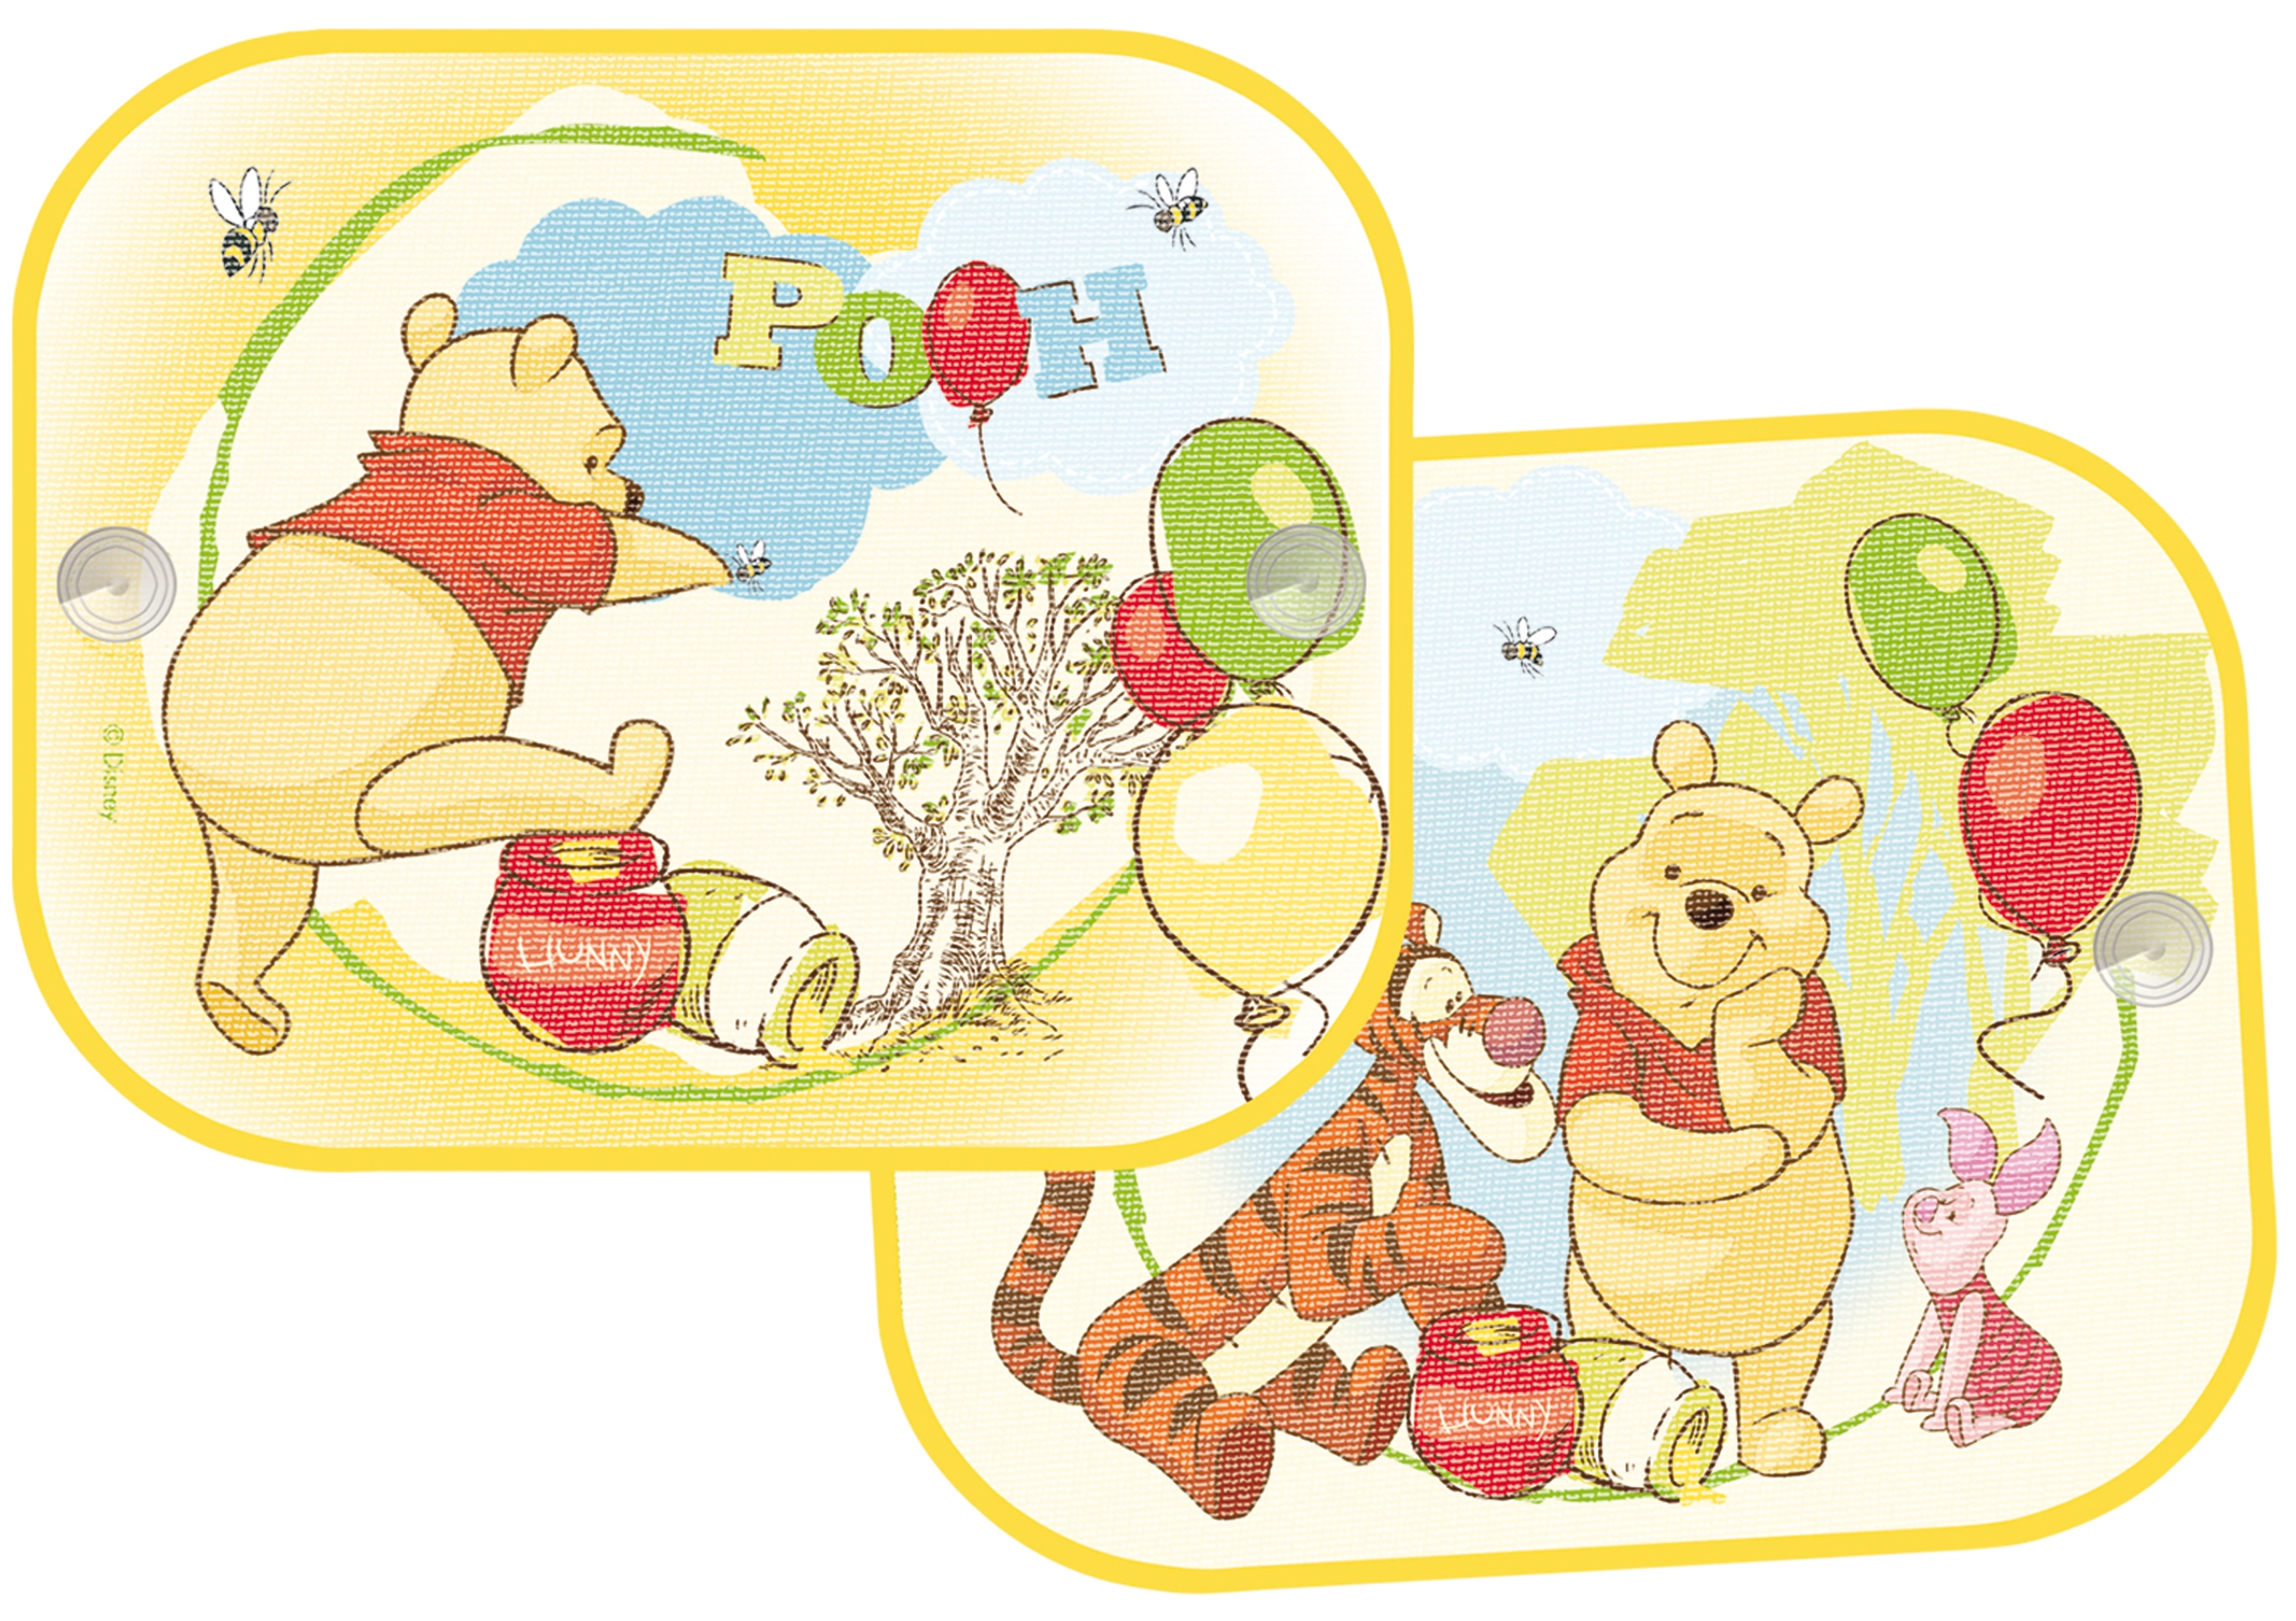 2 TLG. Set Sonnenschutz Rollo - Winnie The Pooh - für Fenster und Auto  Seitenscheibe - Sonnenblende - Jungen Mädchen Kinder Baby - Sonnenrollo -  Puuh